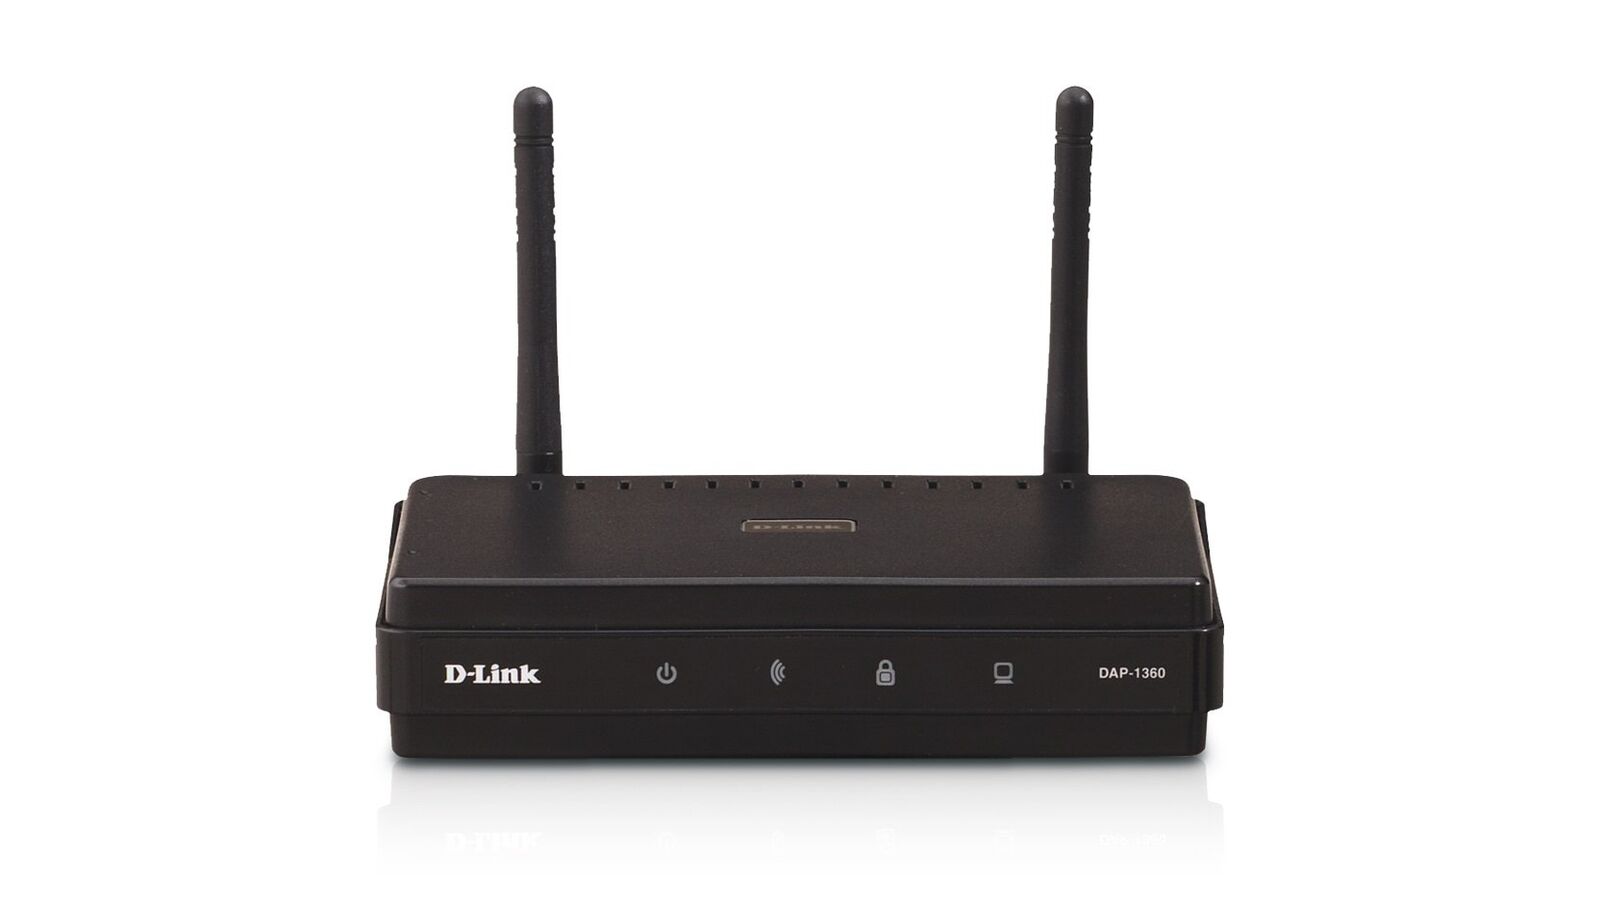 D-Link Wireless Open Access Point Router DAP-1360/B-Black